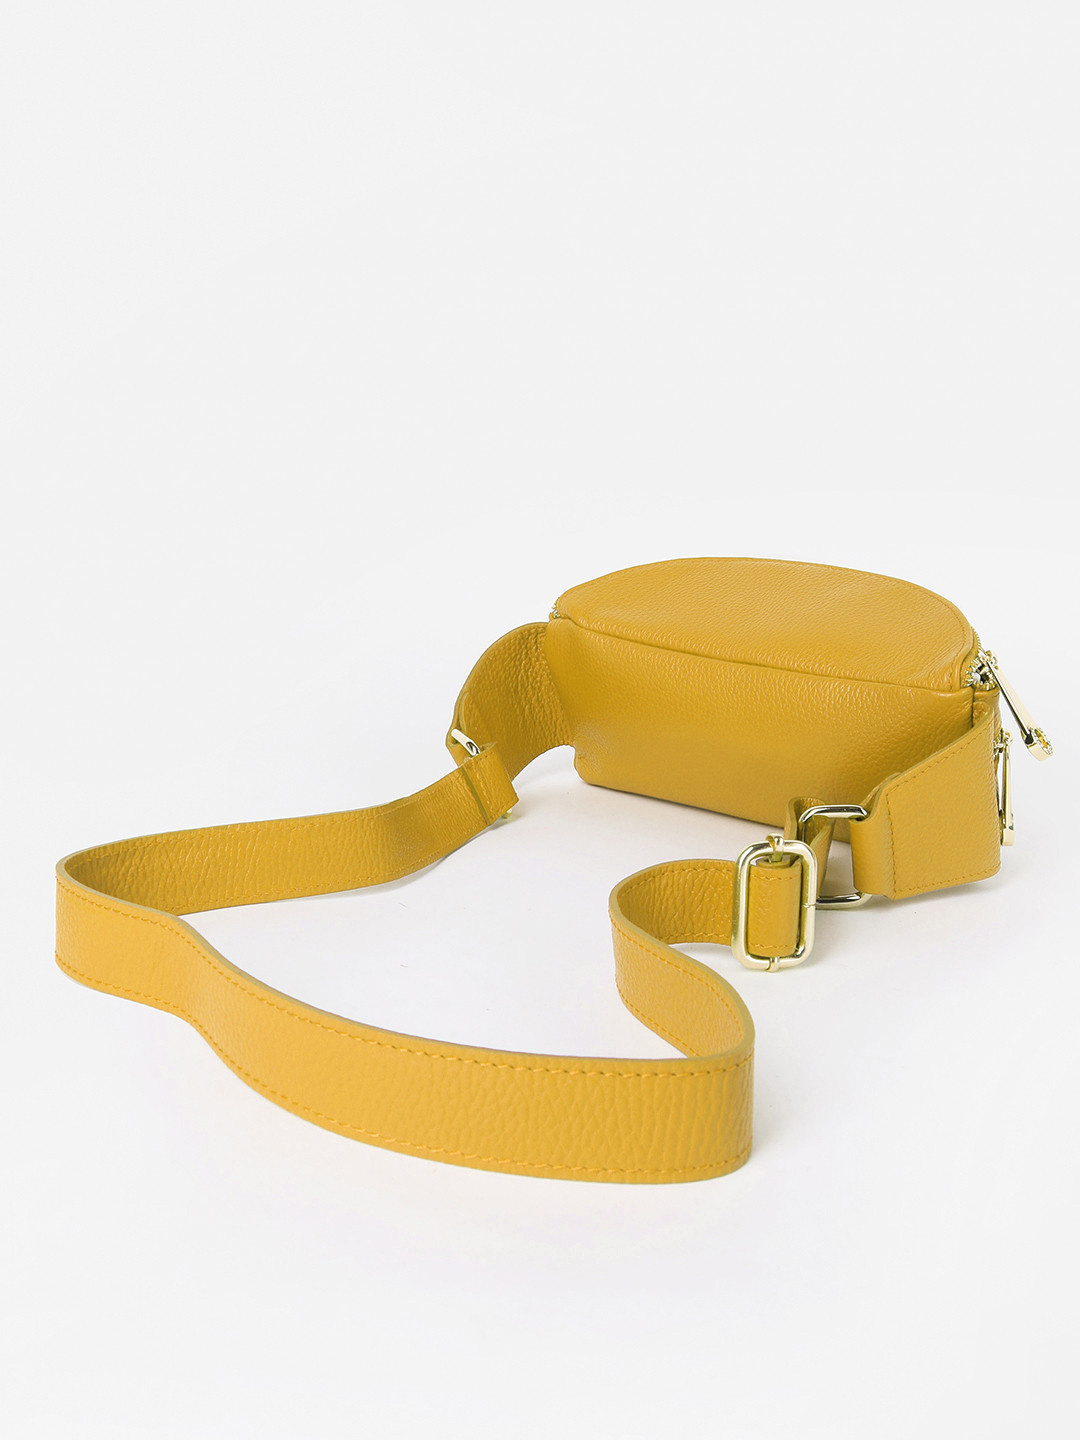 Фото Женская поясная сумка из натуральной кожи желтого цвета Сумки на пояс